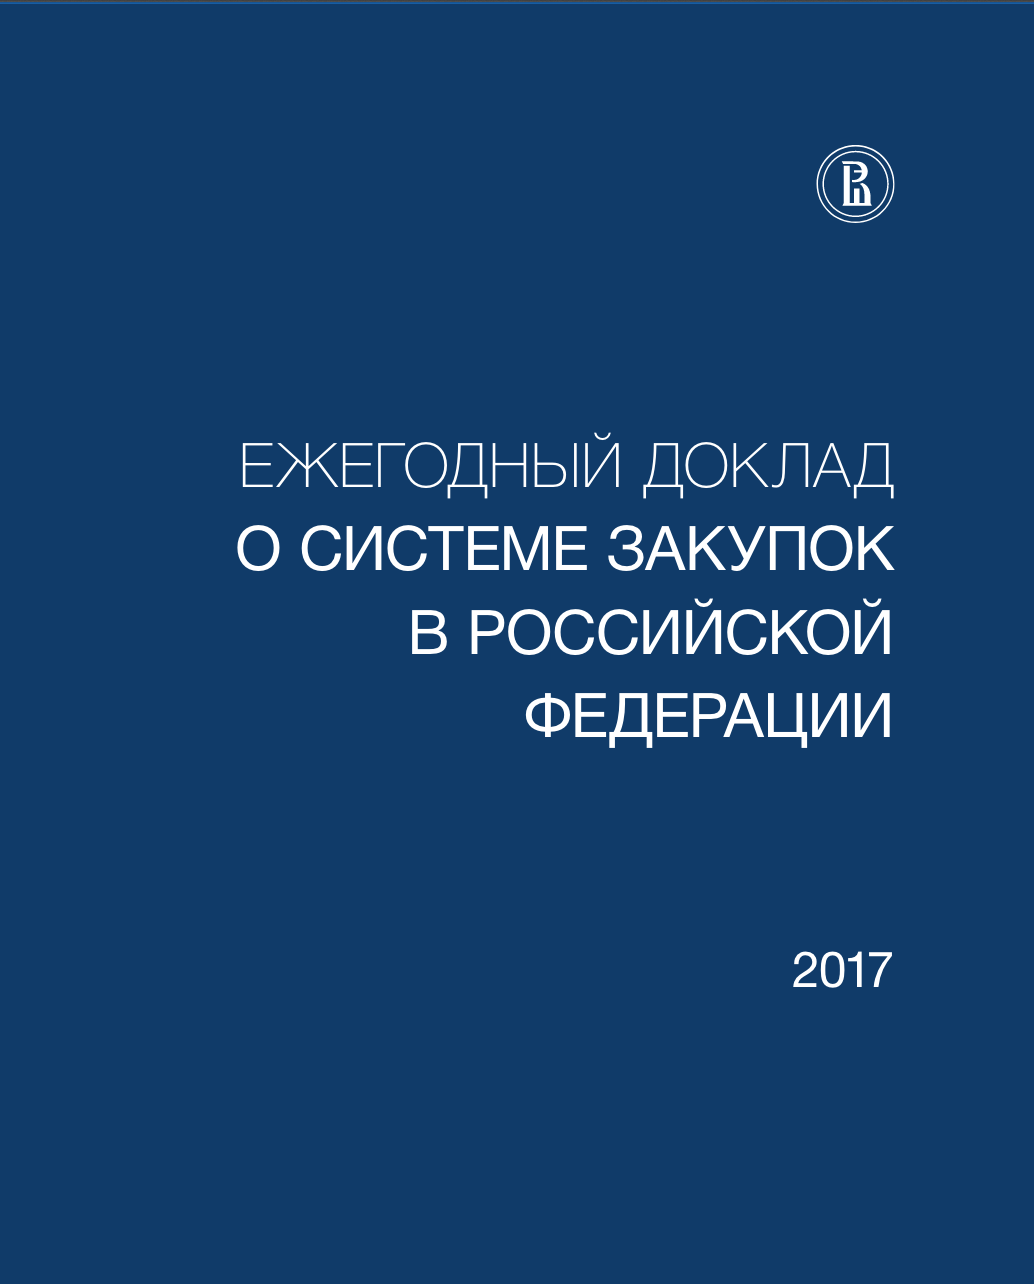 О системе закупок в Российской Федерации - 2017. Ежегодный доклад